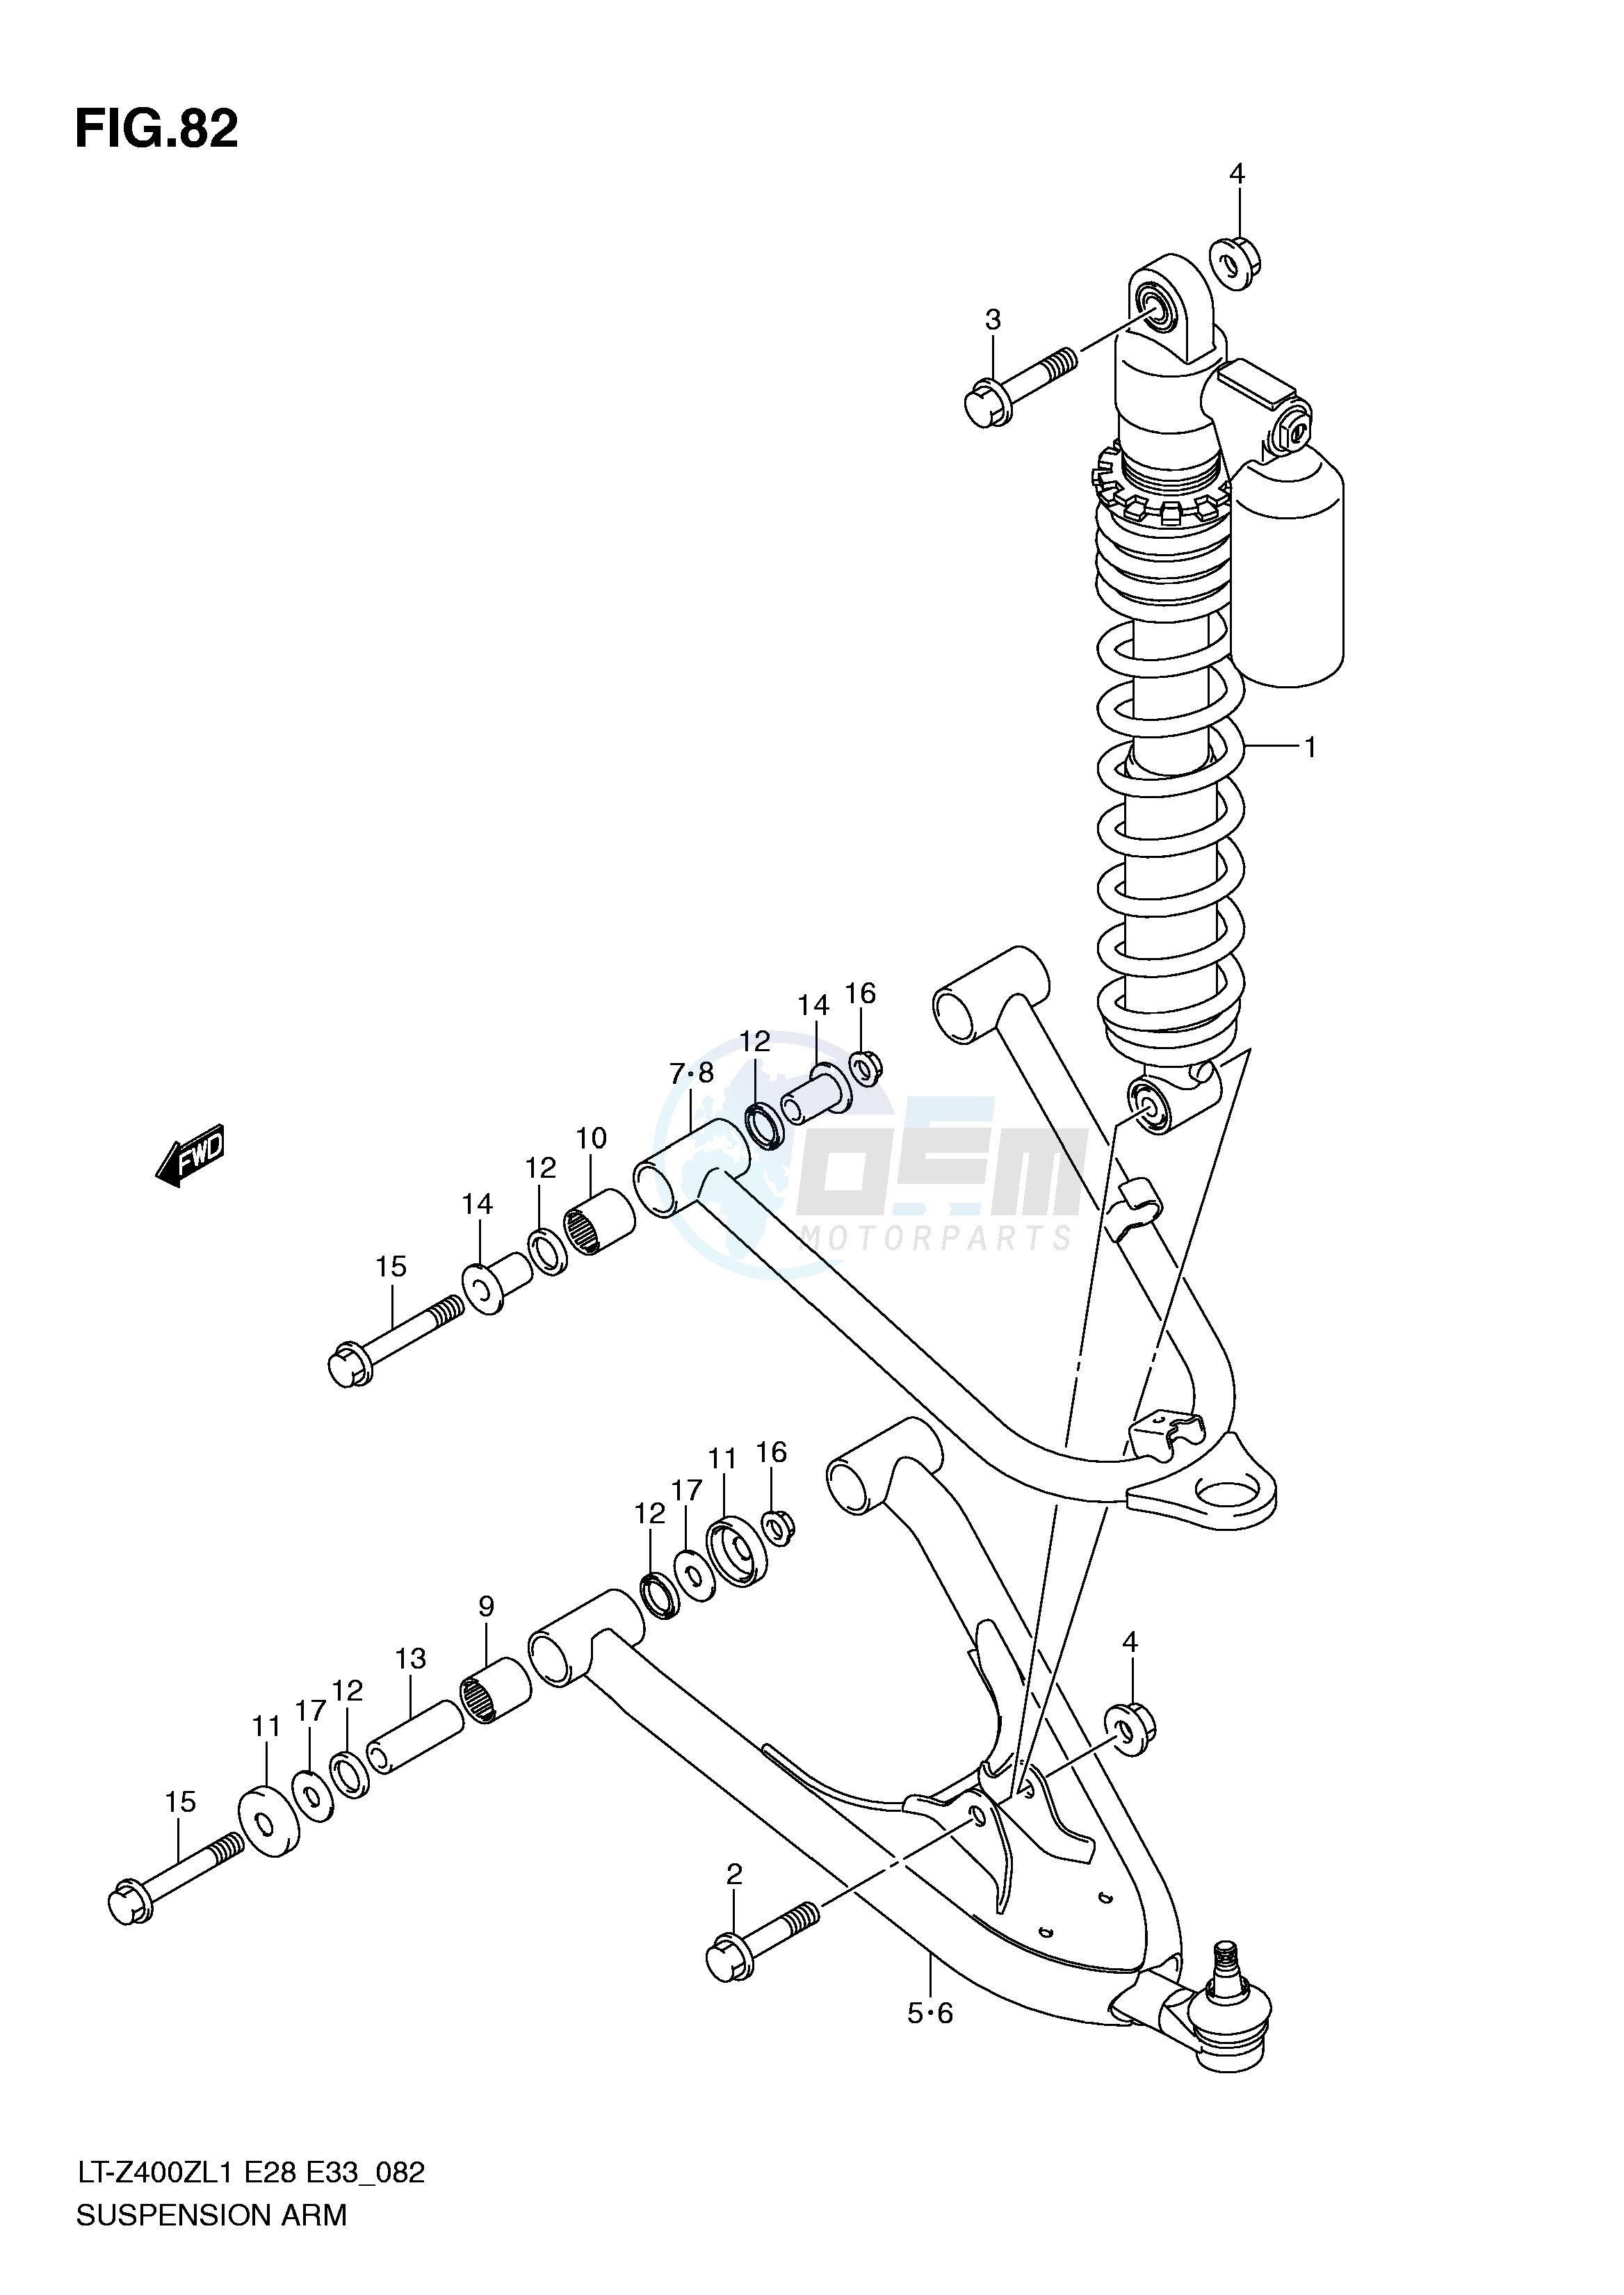 SUSPENSION ARM (LT-Z400L1 E33) image